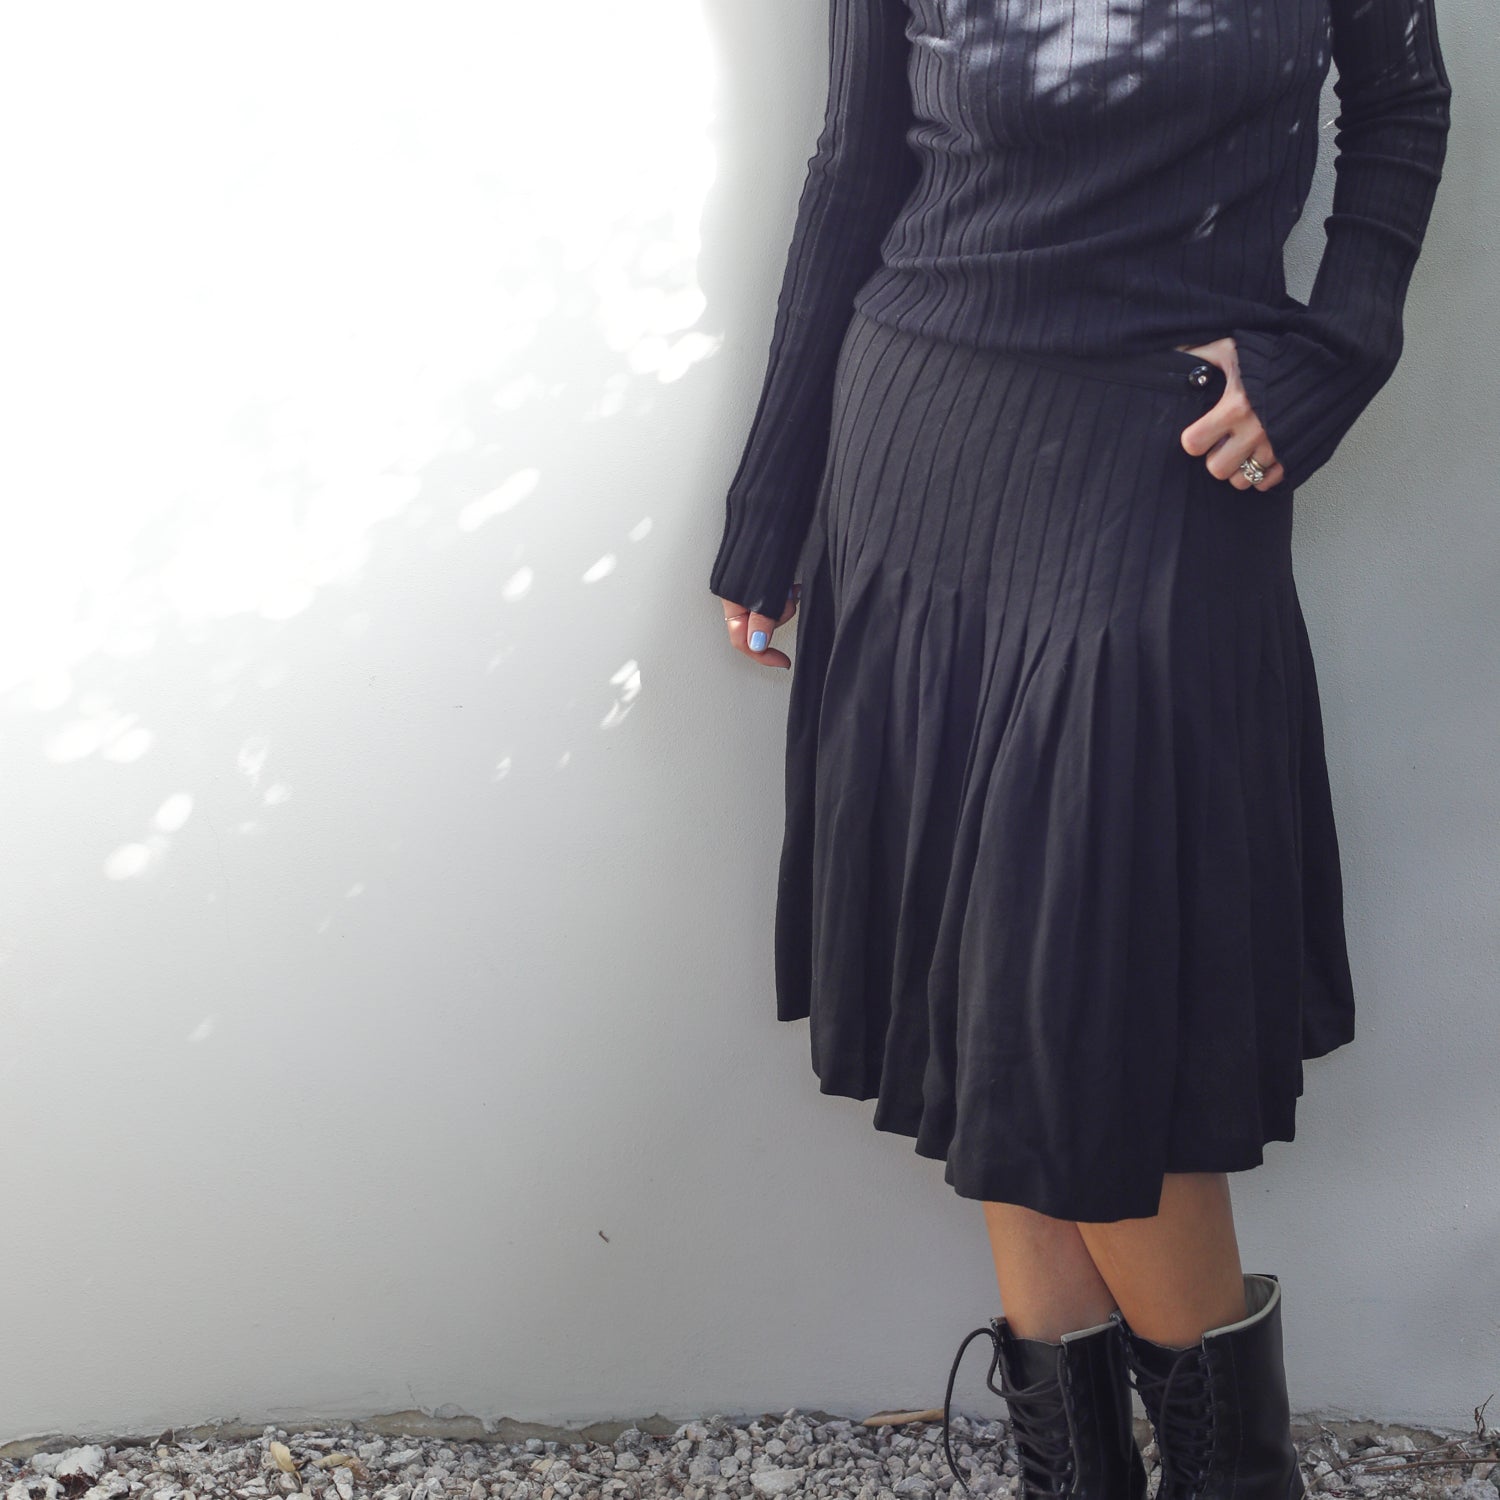 Vintage Wool Crepe Pleated Skirt